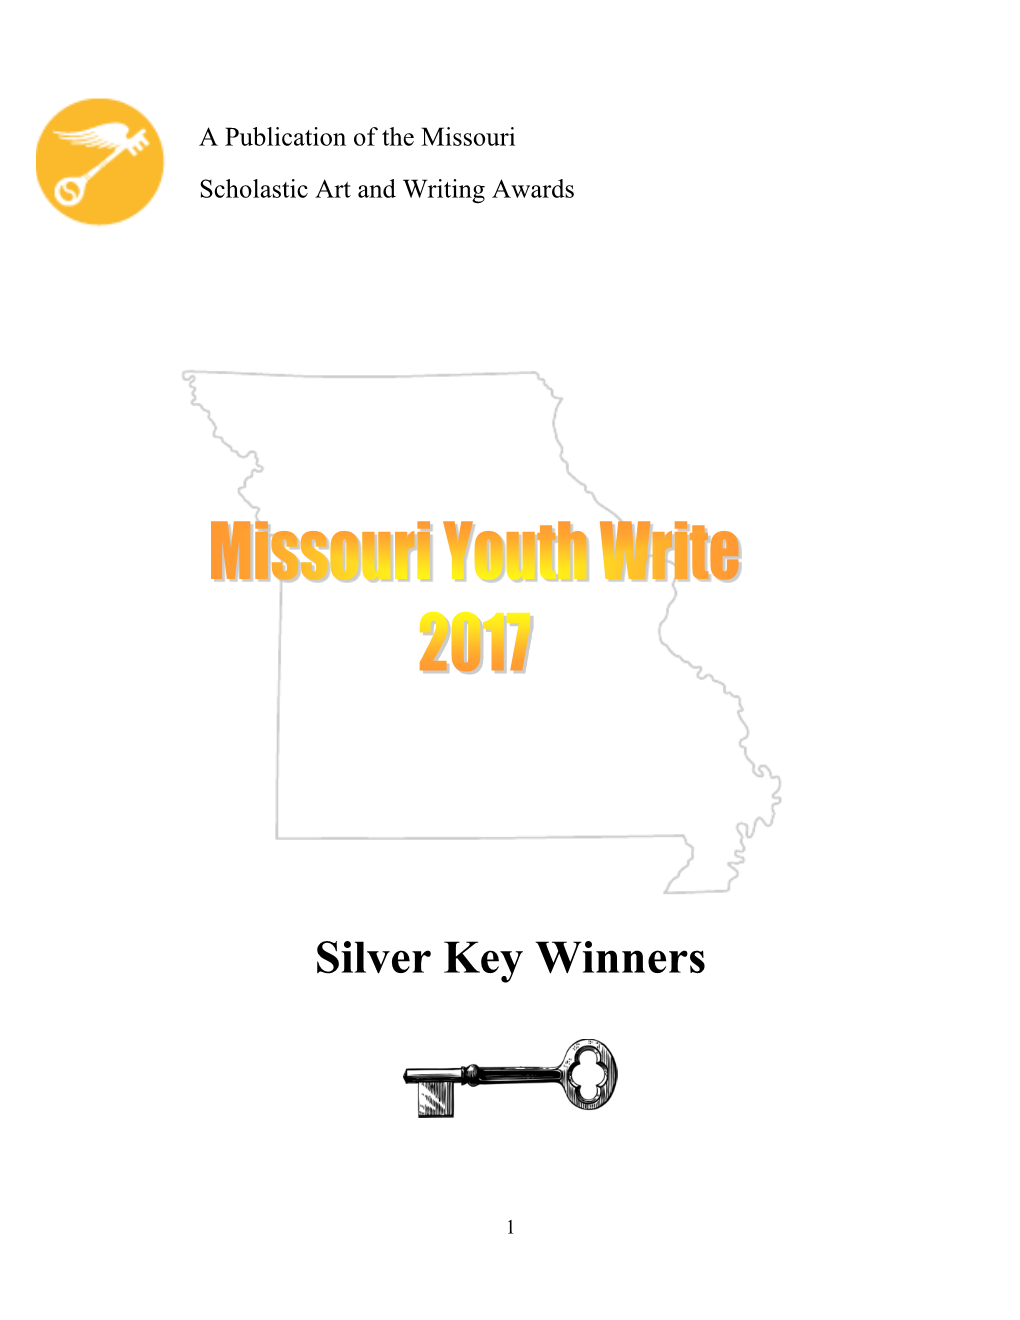 Silver Key Winners